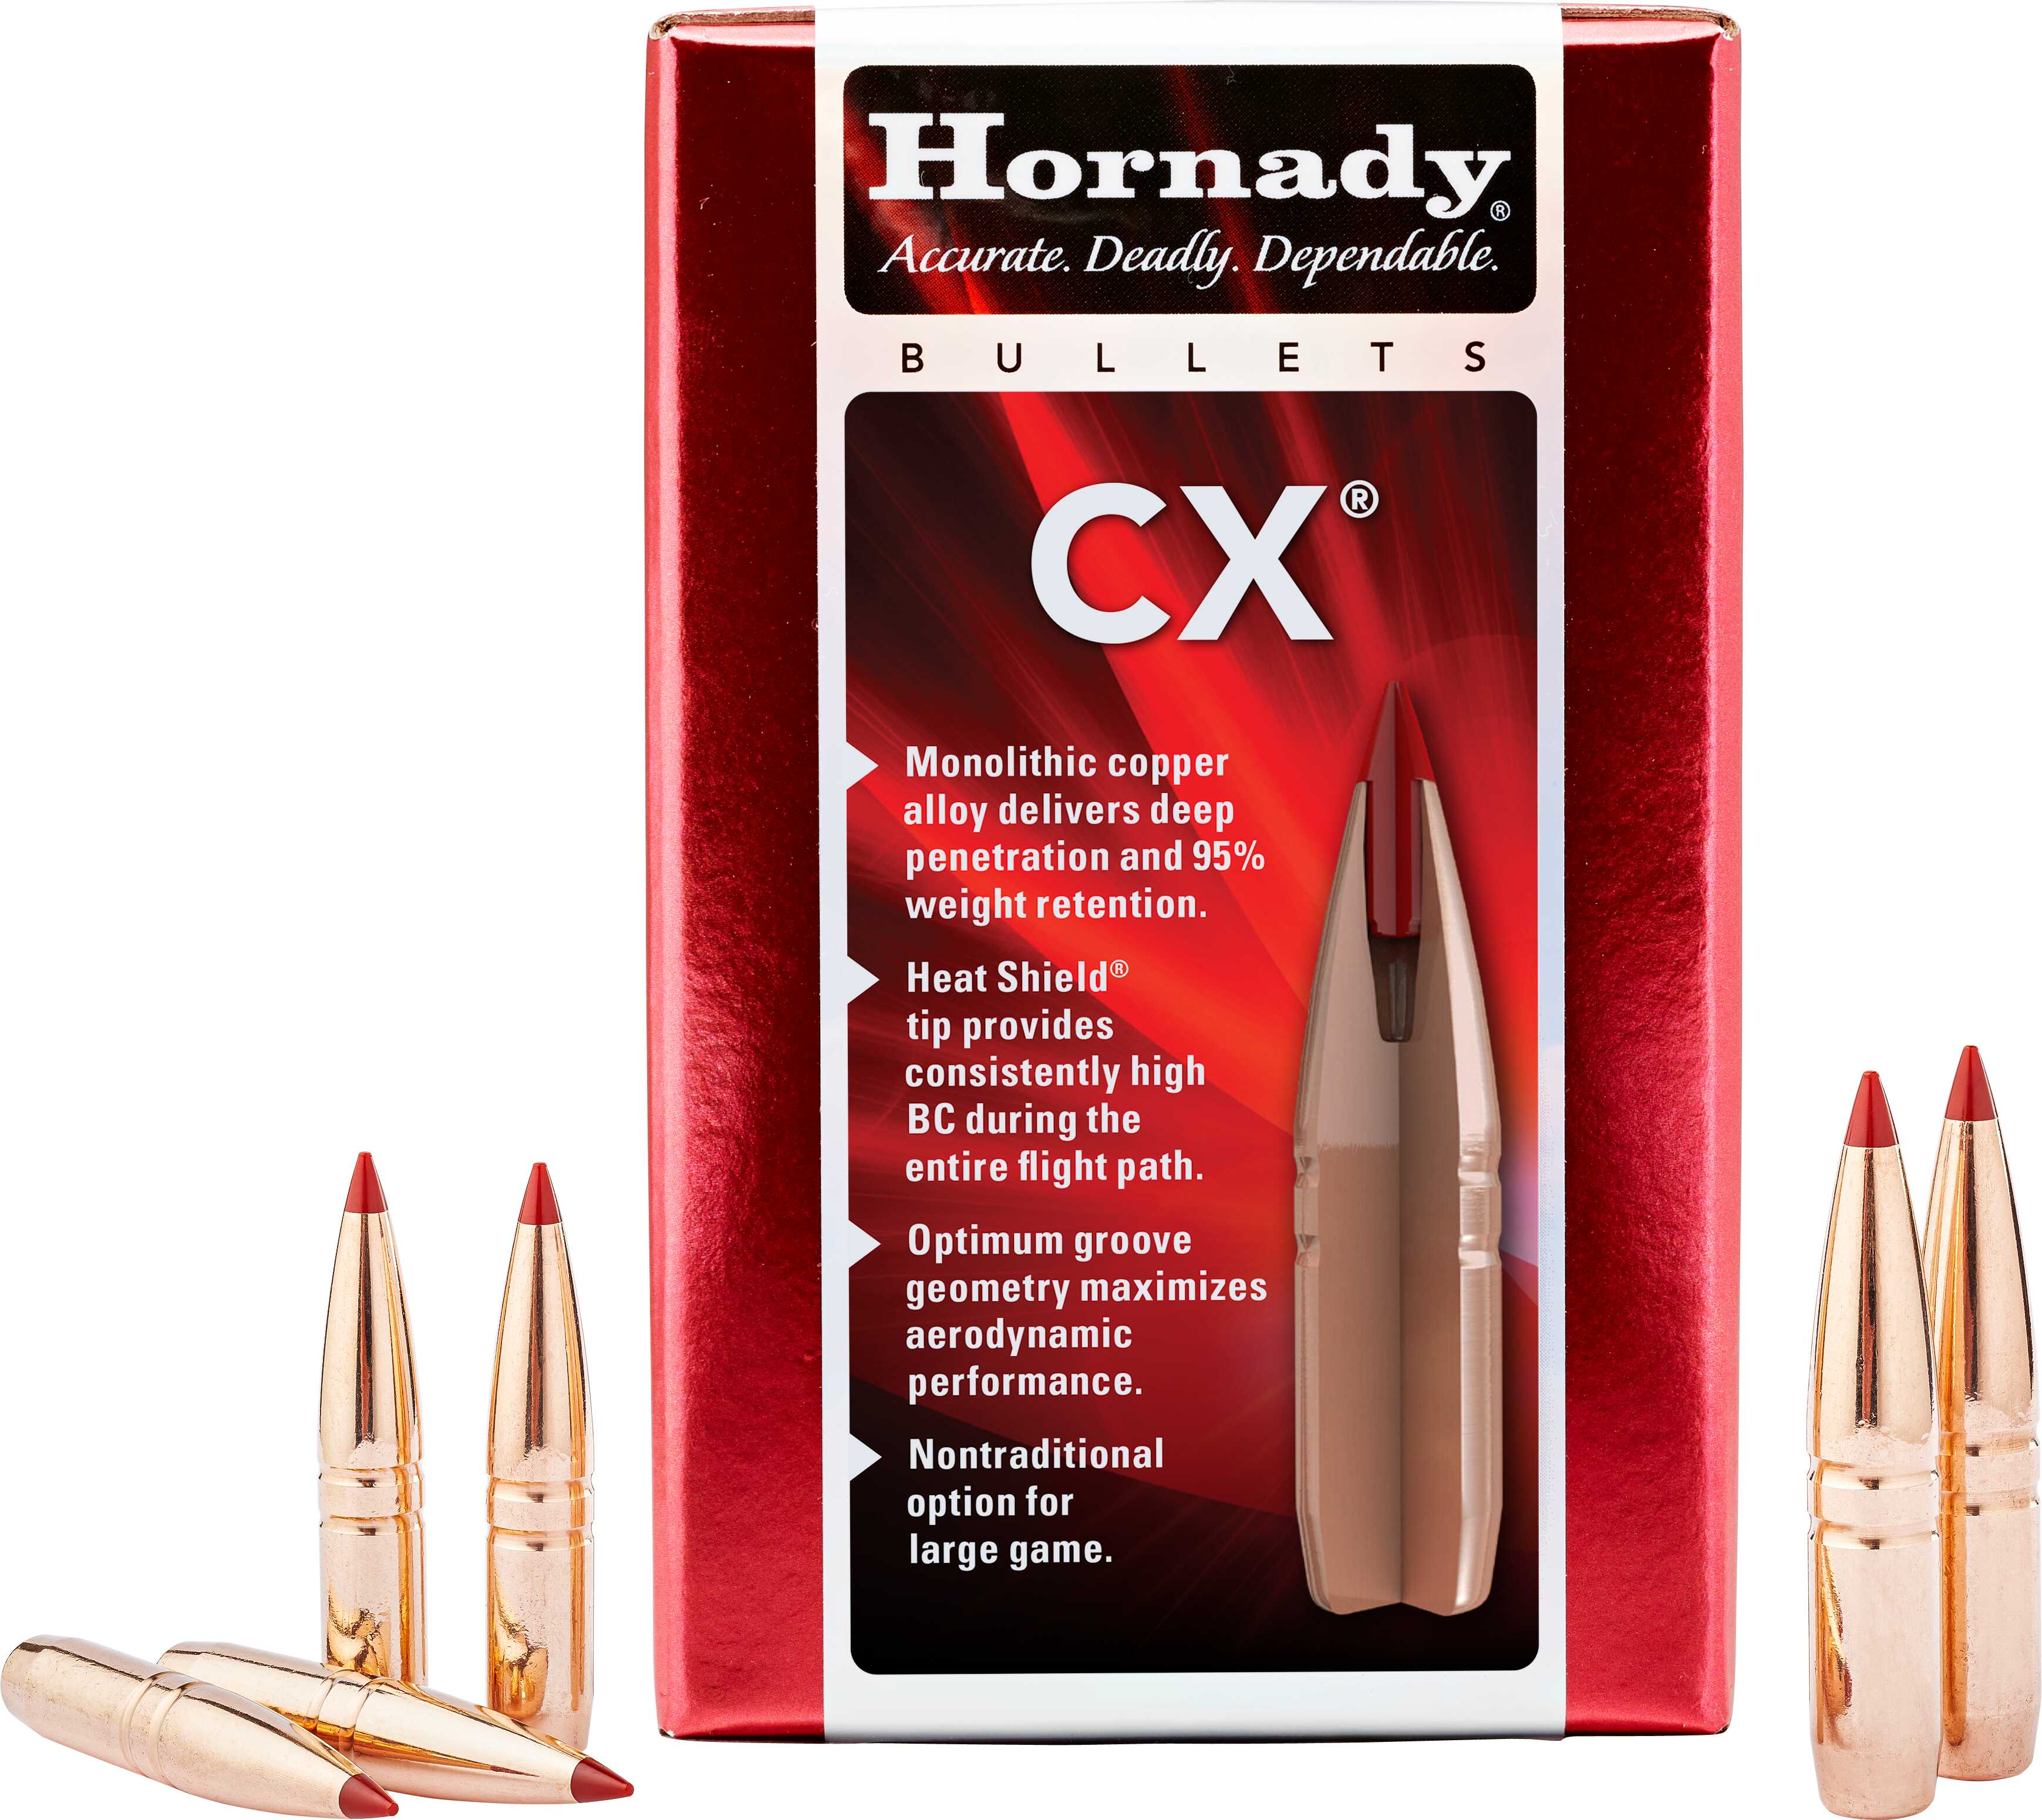 Hornady Bullets 338 Cal .355 185 Gr CX 50 Count